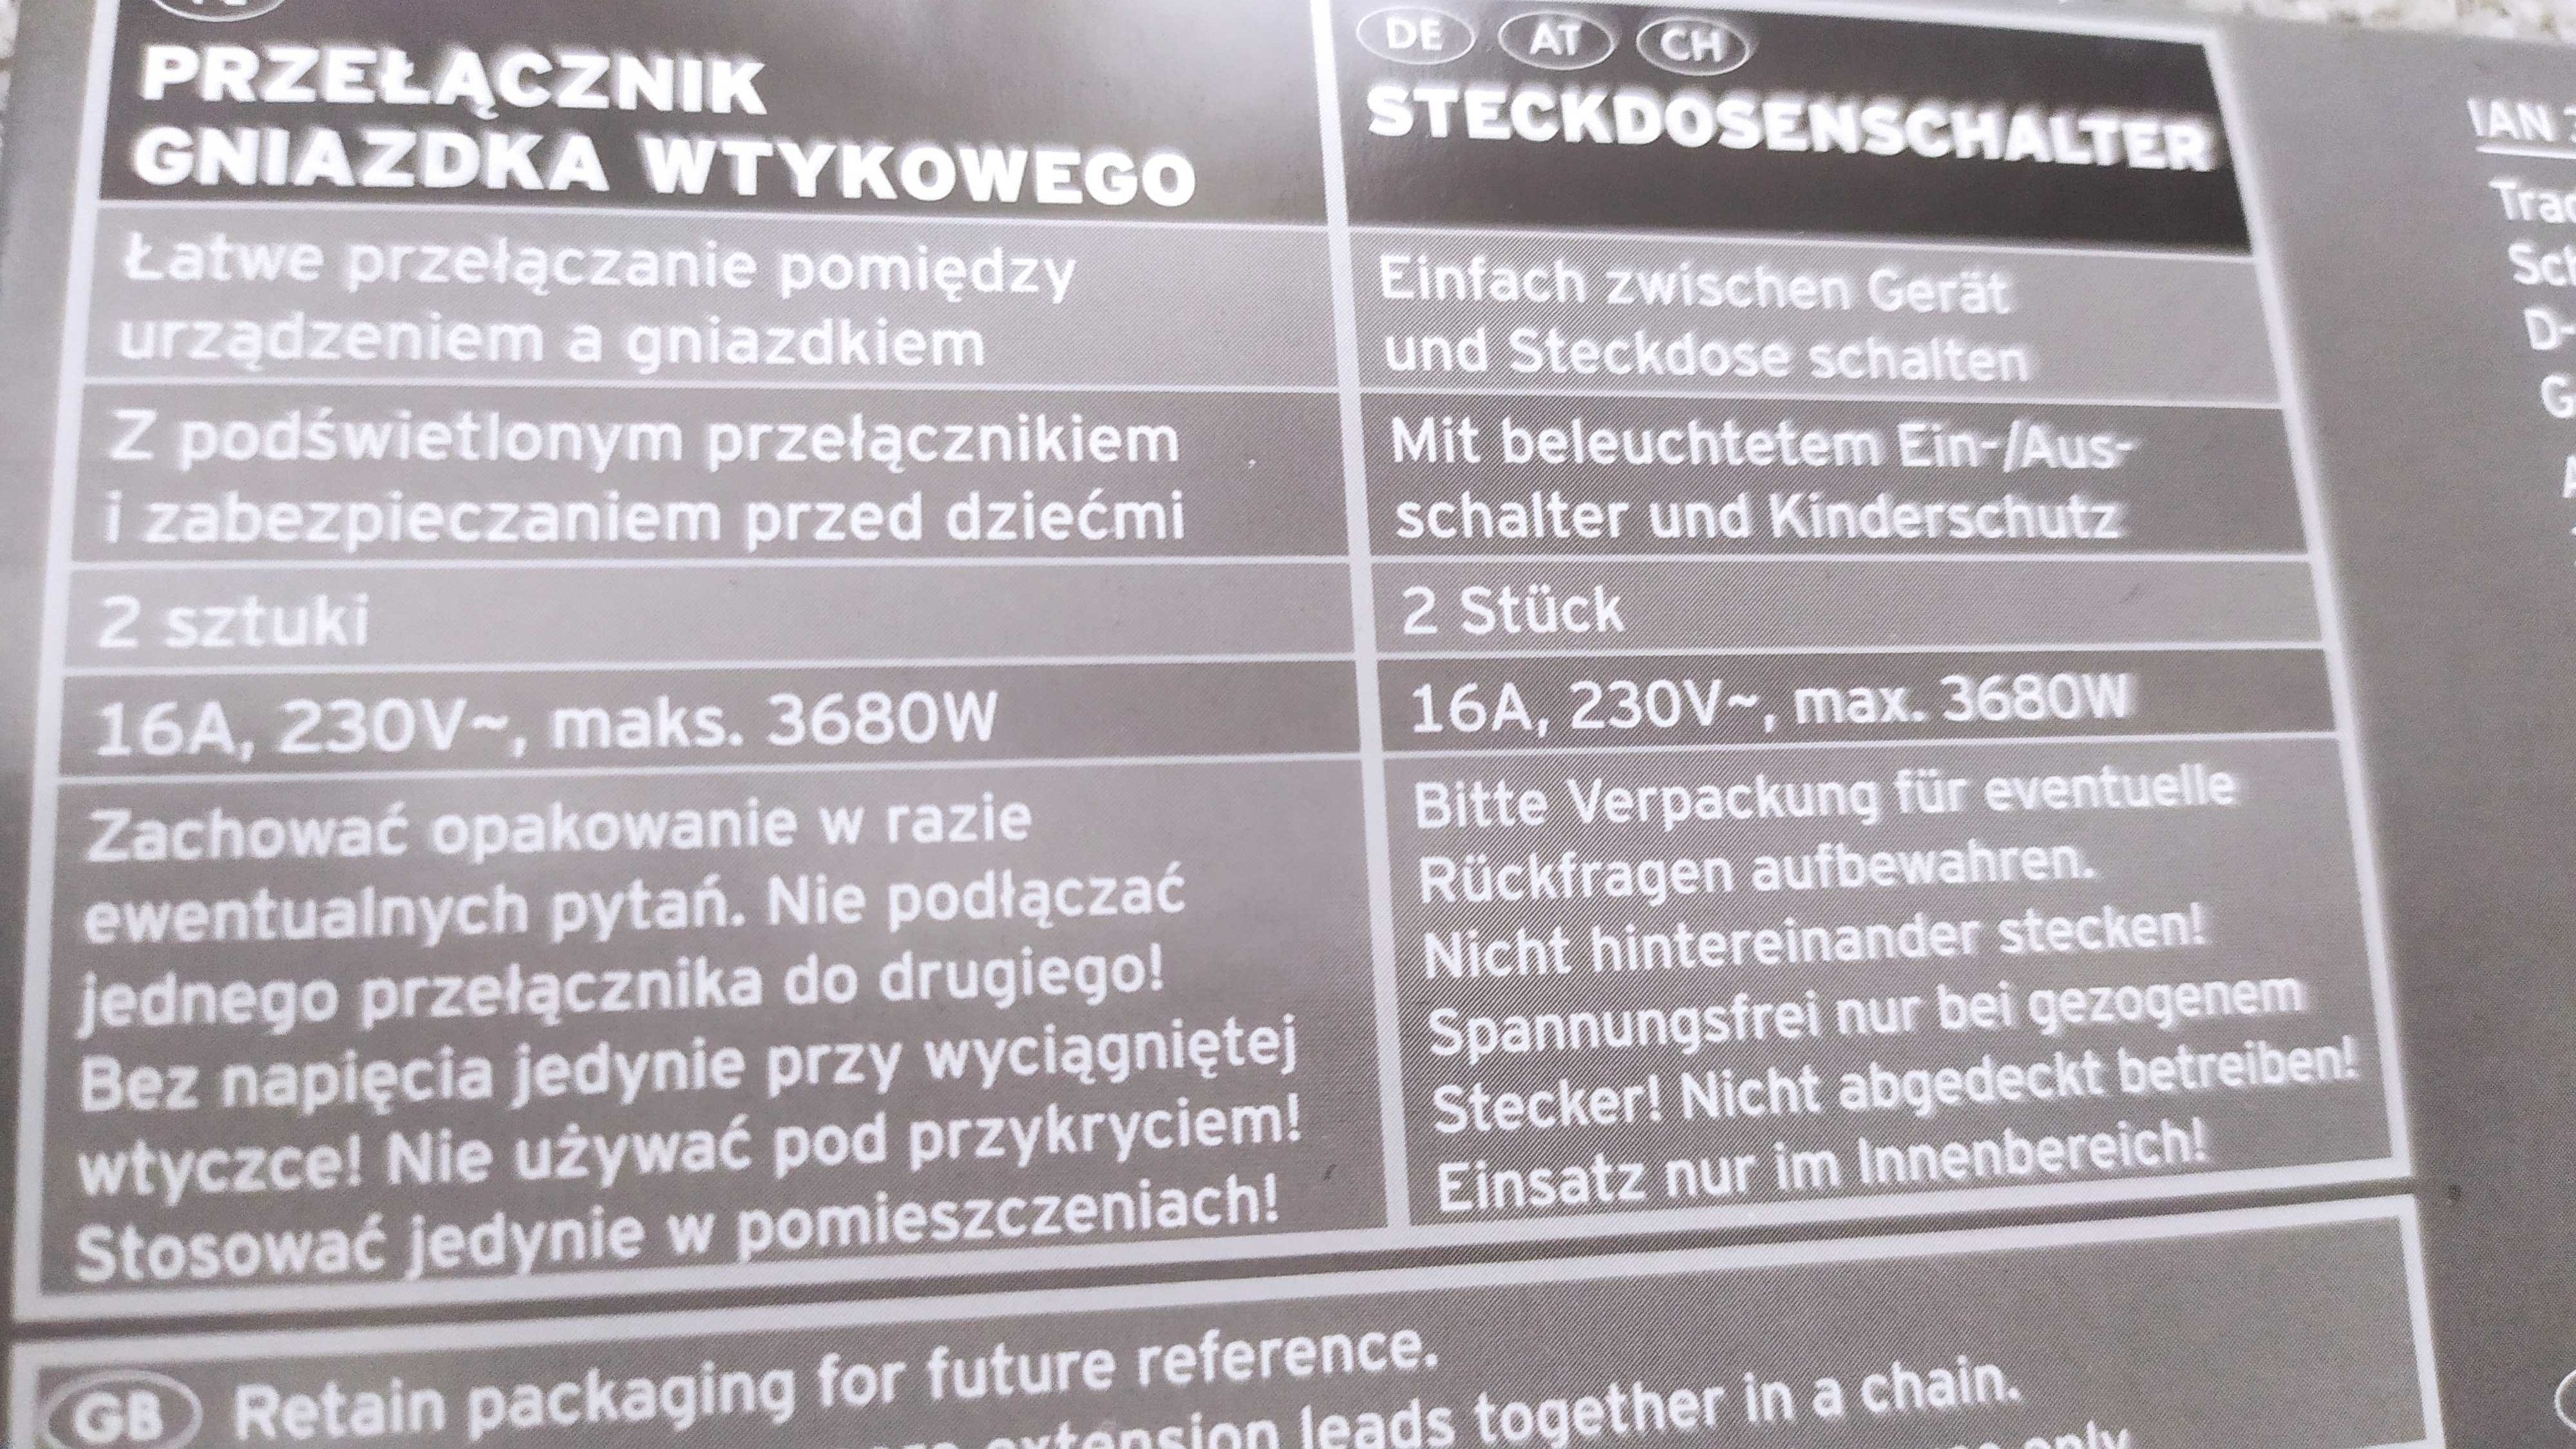 Nowy przełącznik gniazdka wtykowego 2 szt, prod. Germany